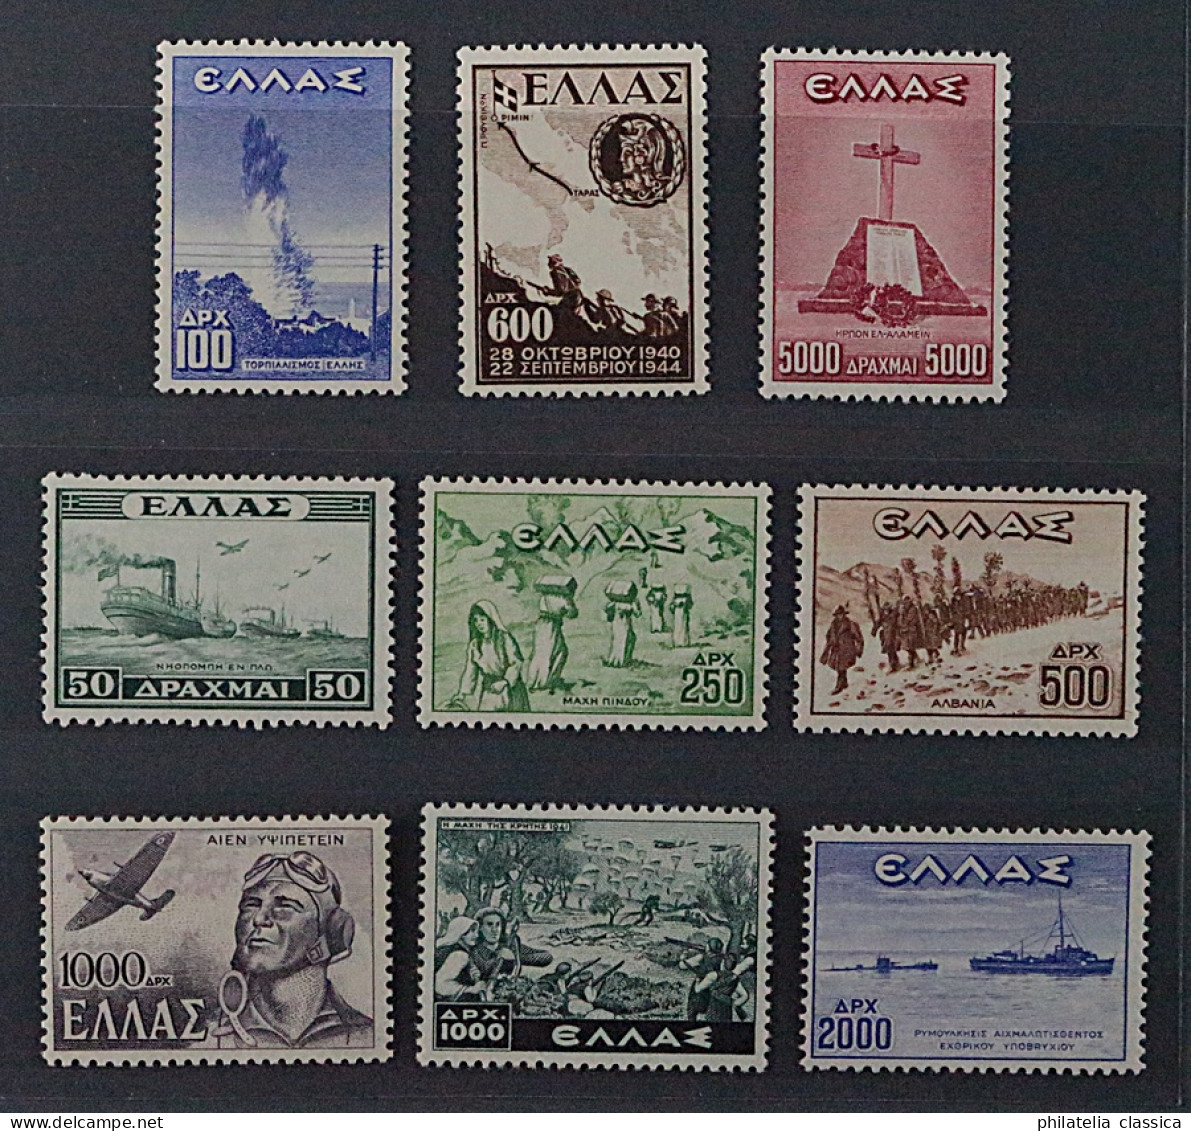 1947, GRIECHENLAND 541-48 ** Befreiung, 8 Werte Kpl. Postfrisch, 100,-€ - Nuovi